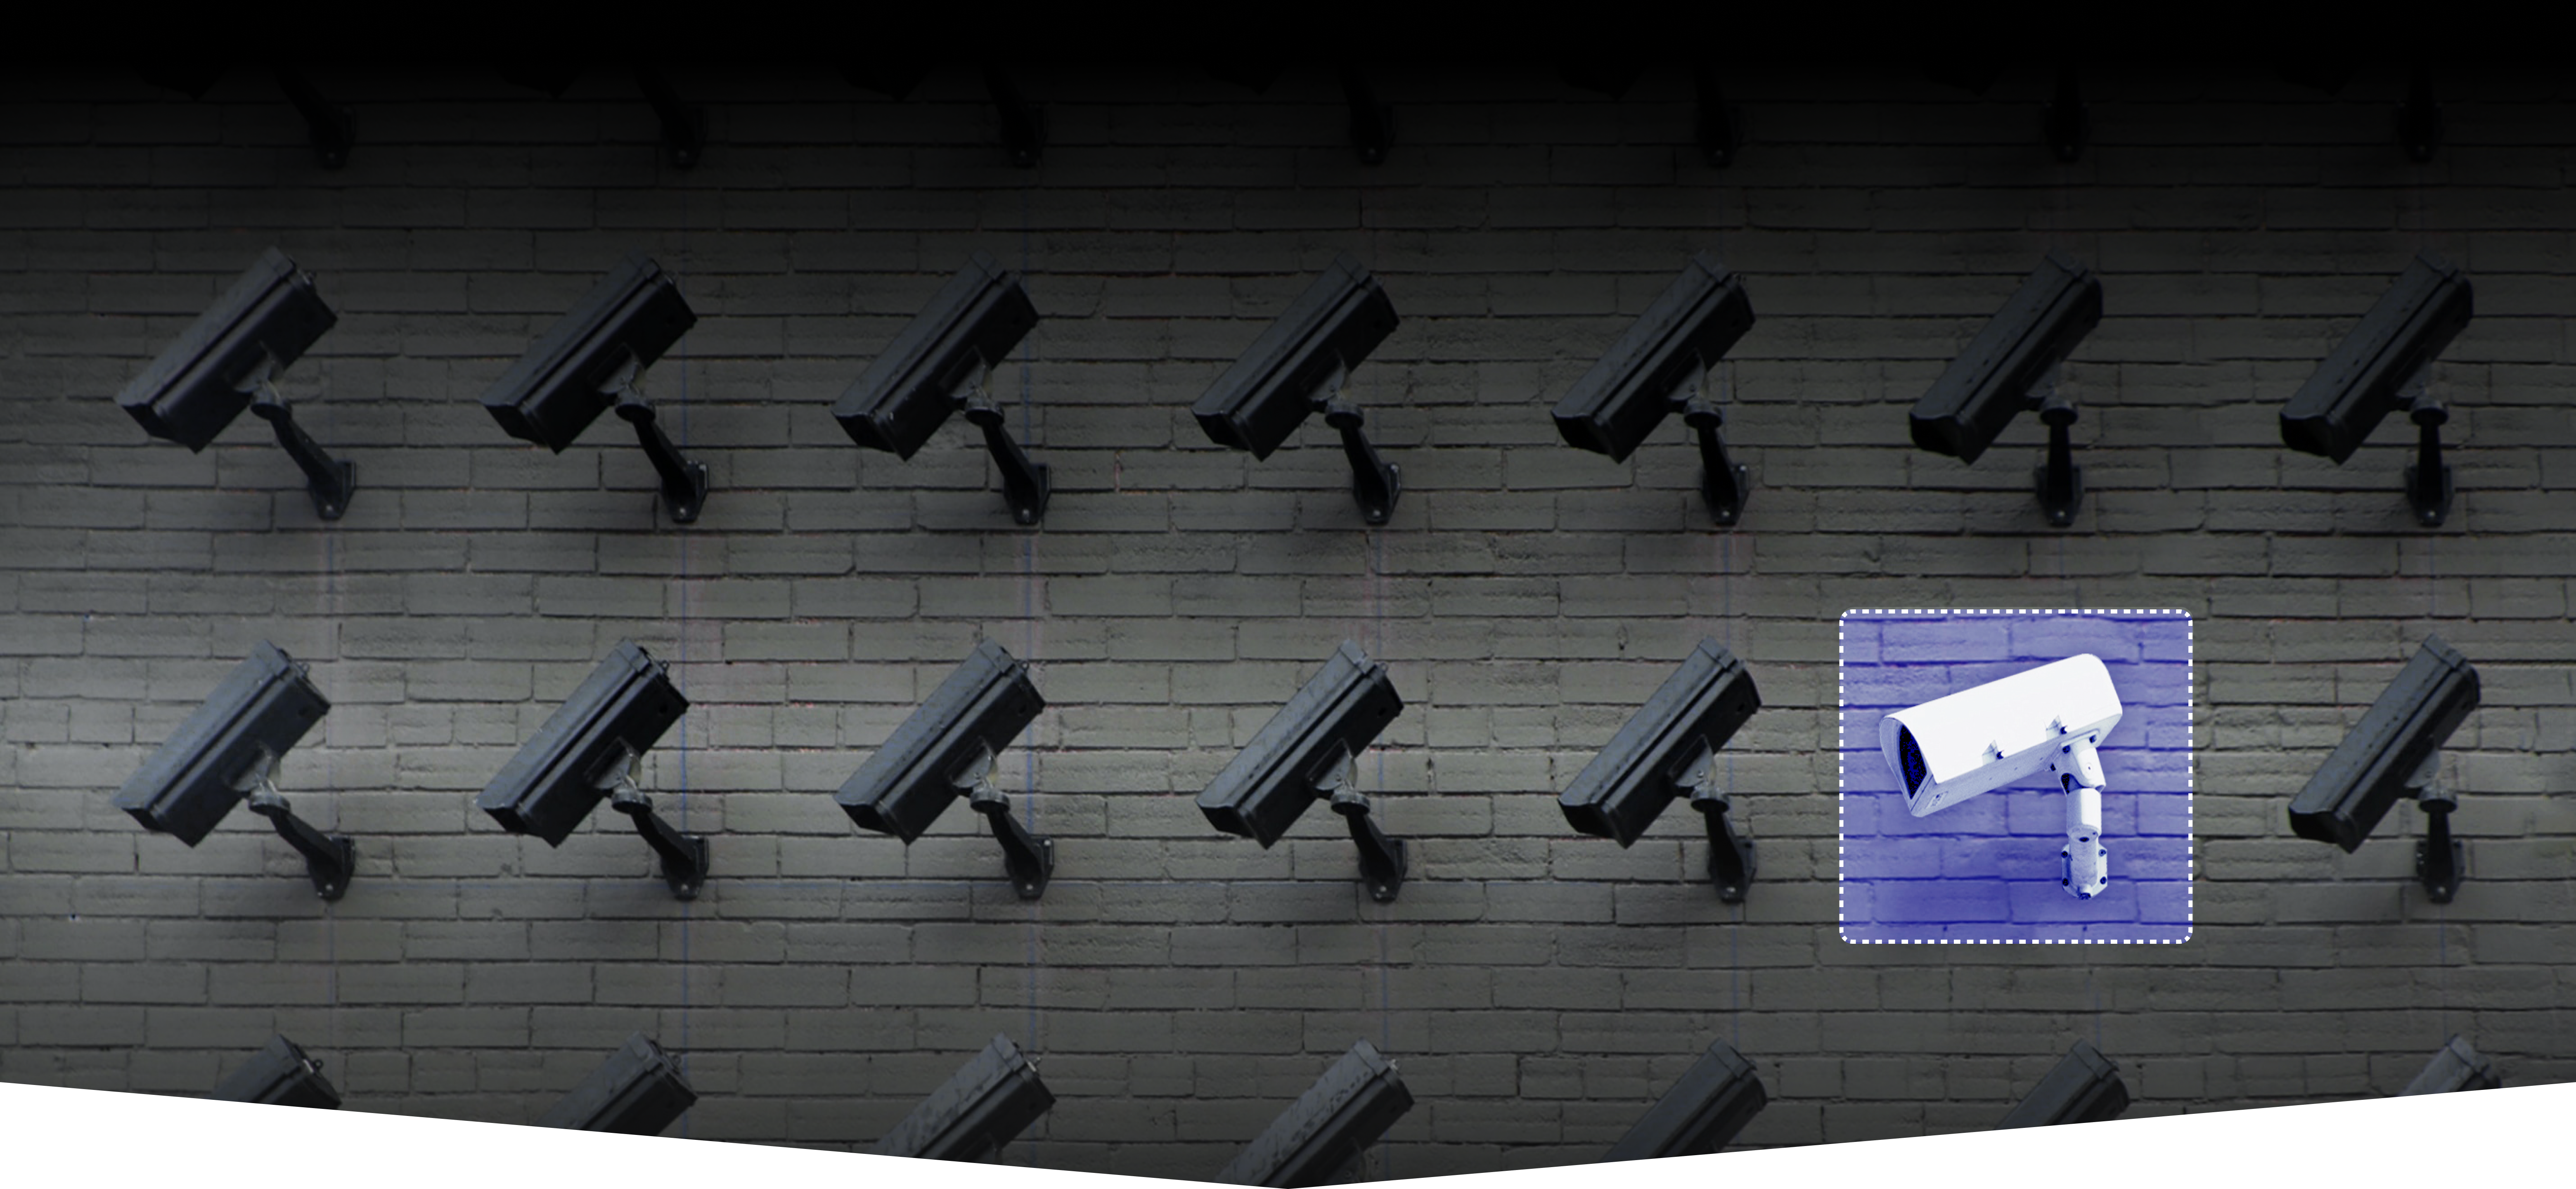 Video surveillance security cameras